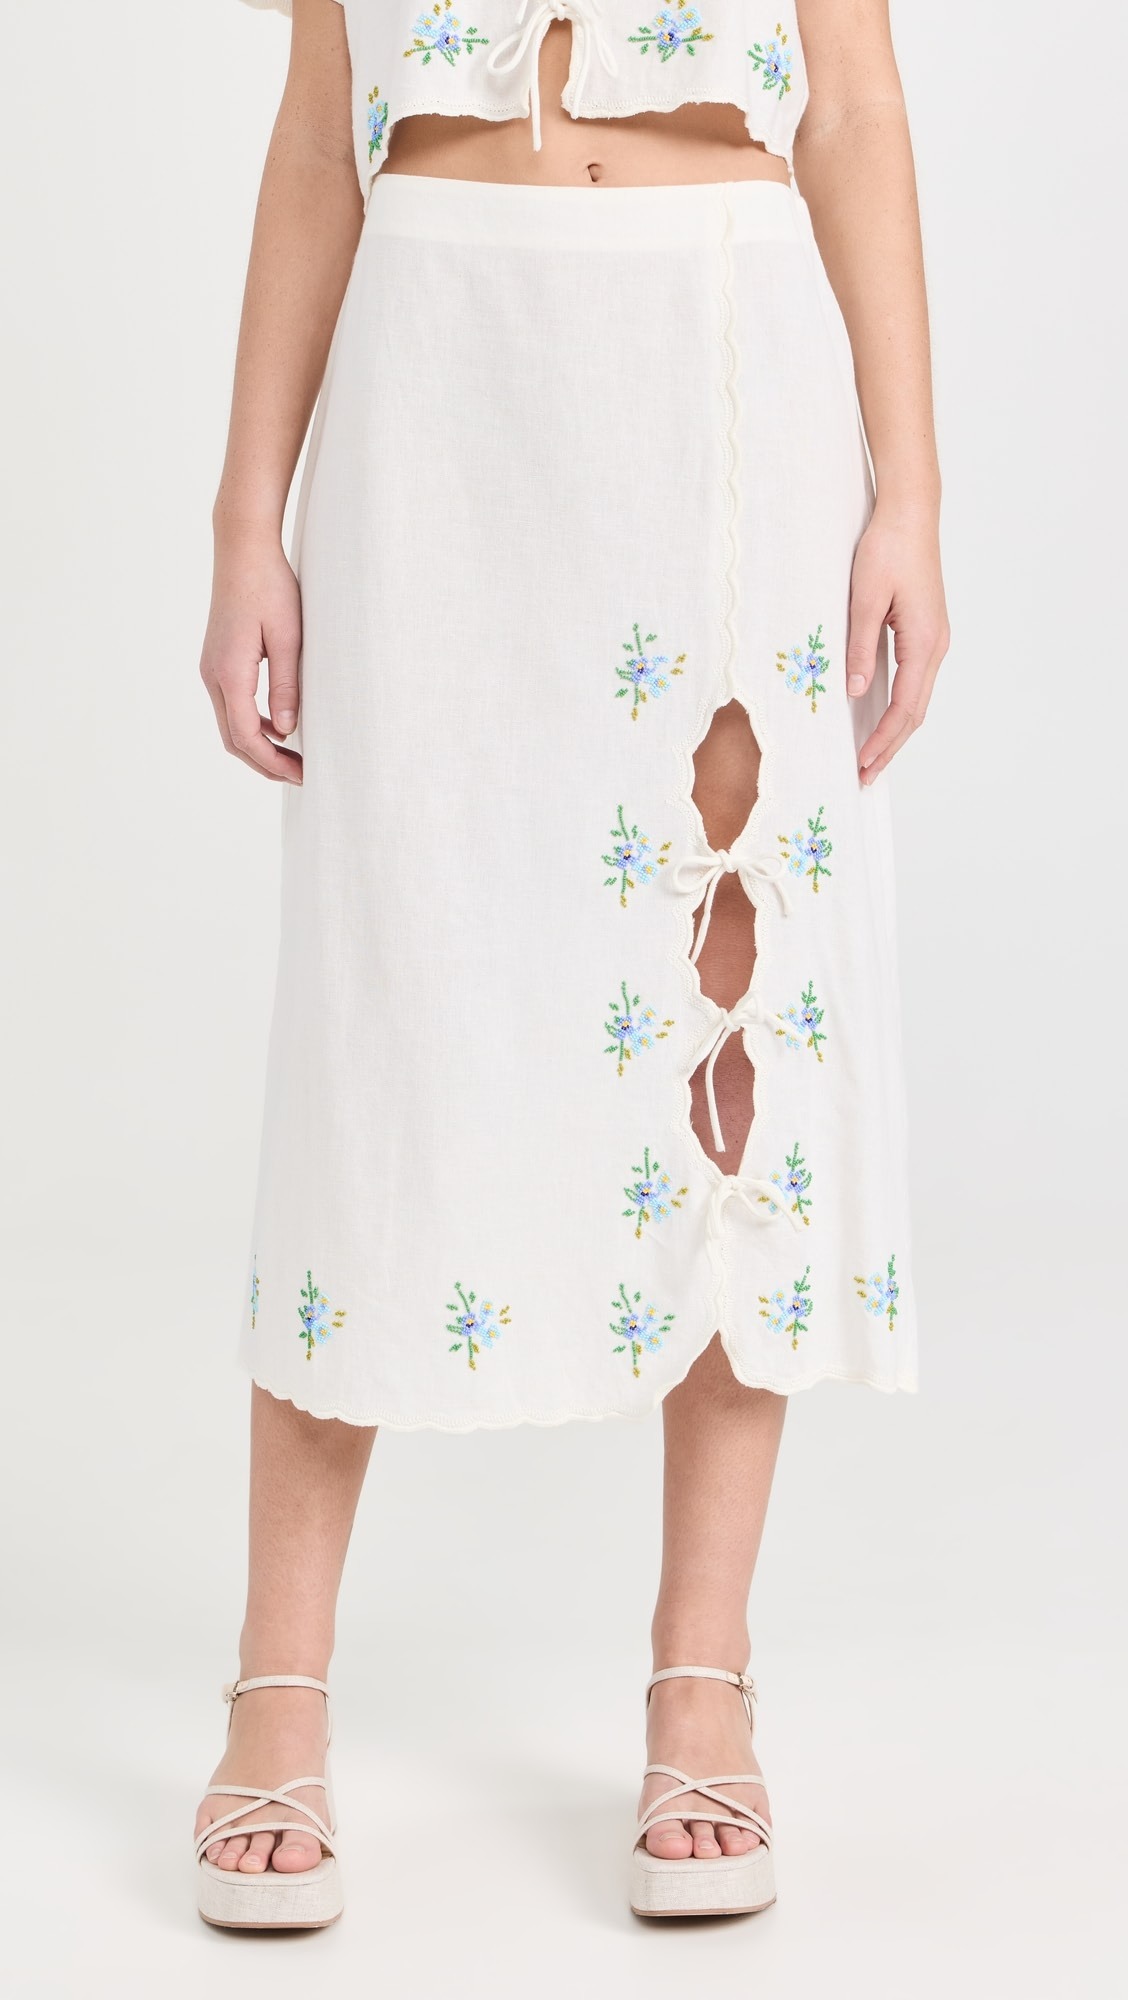 Sea white linen beaded skirt